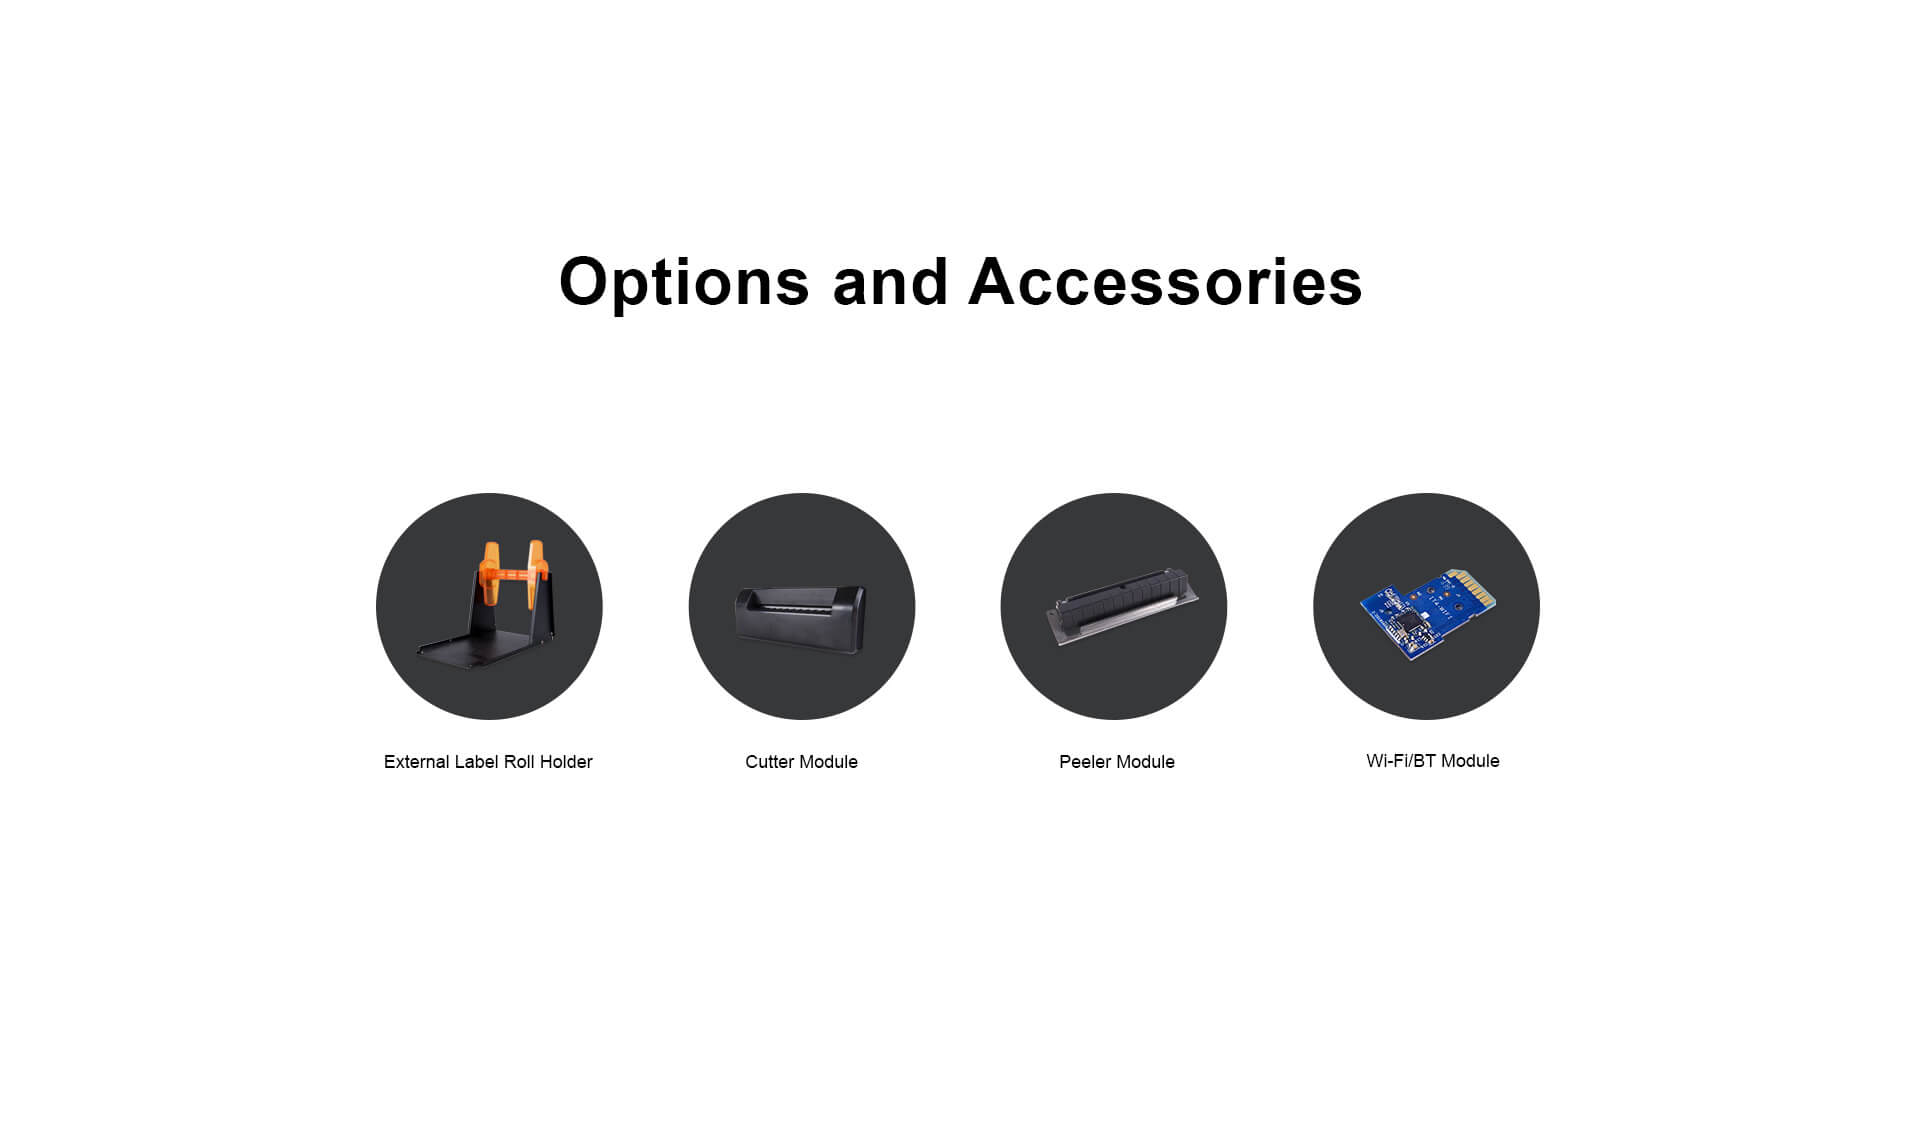 iDPRT iT4S accessories